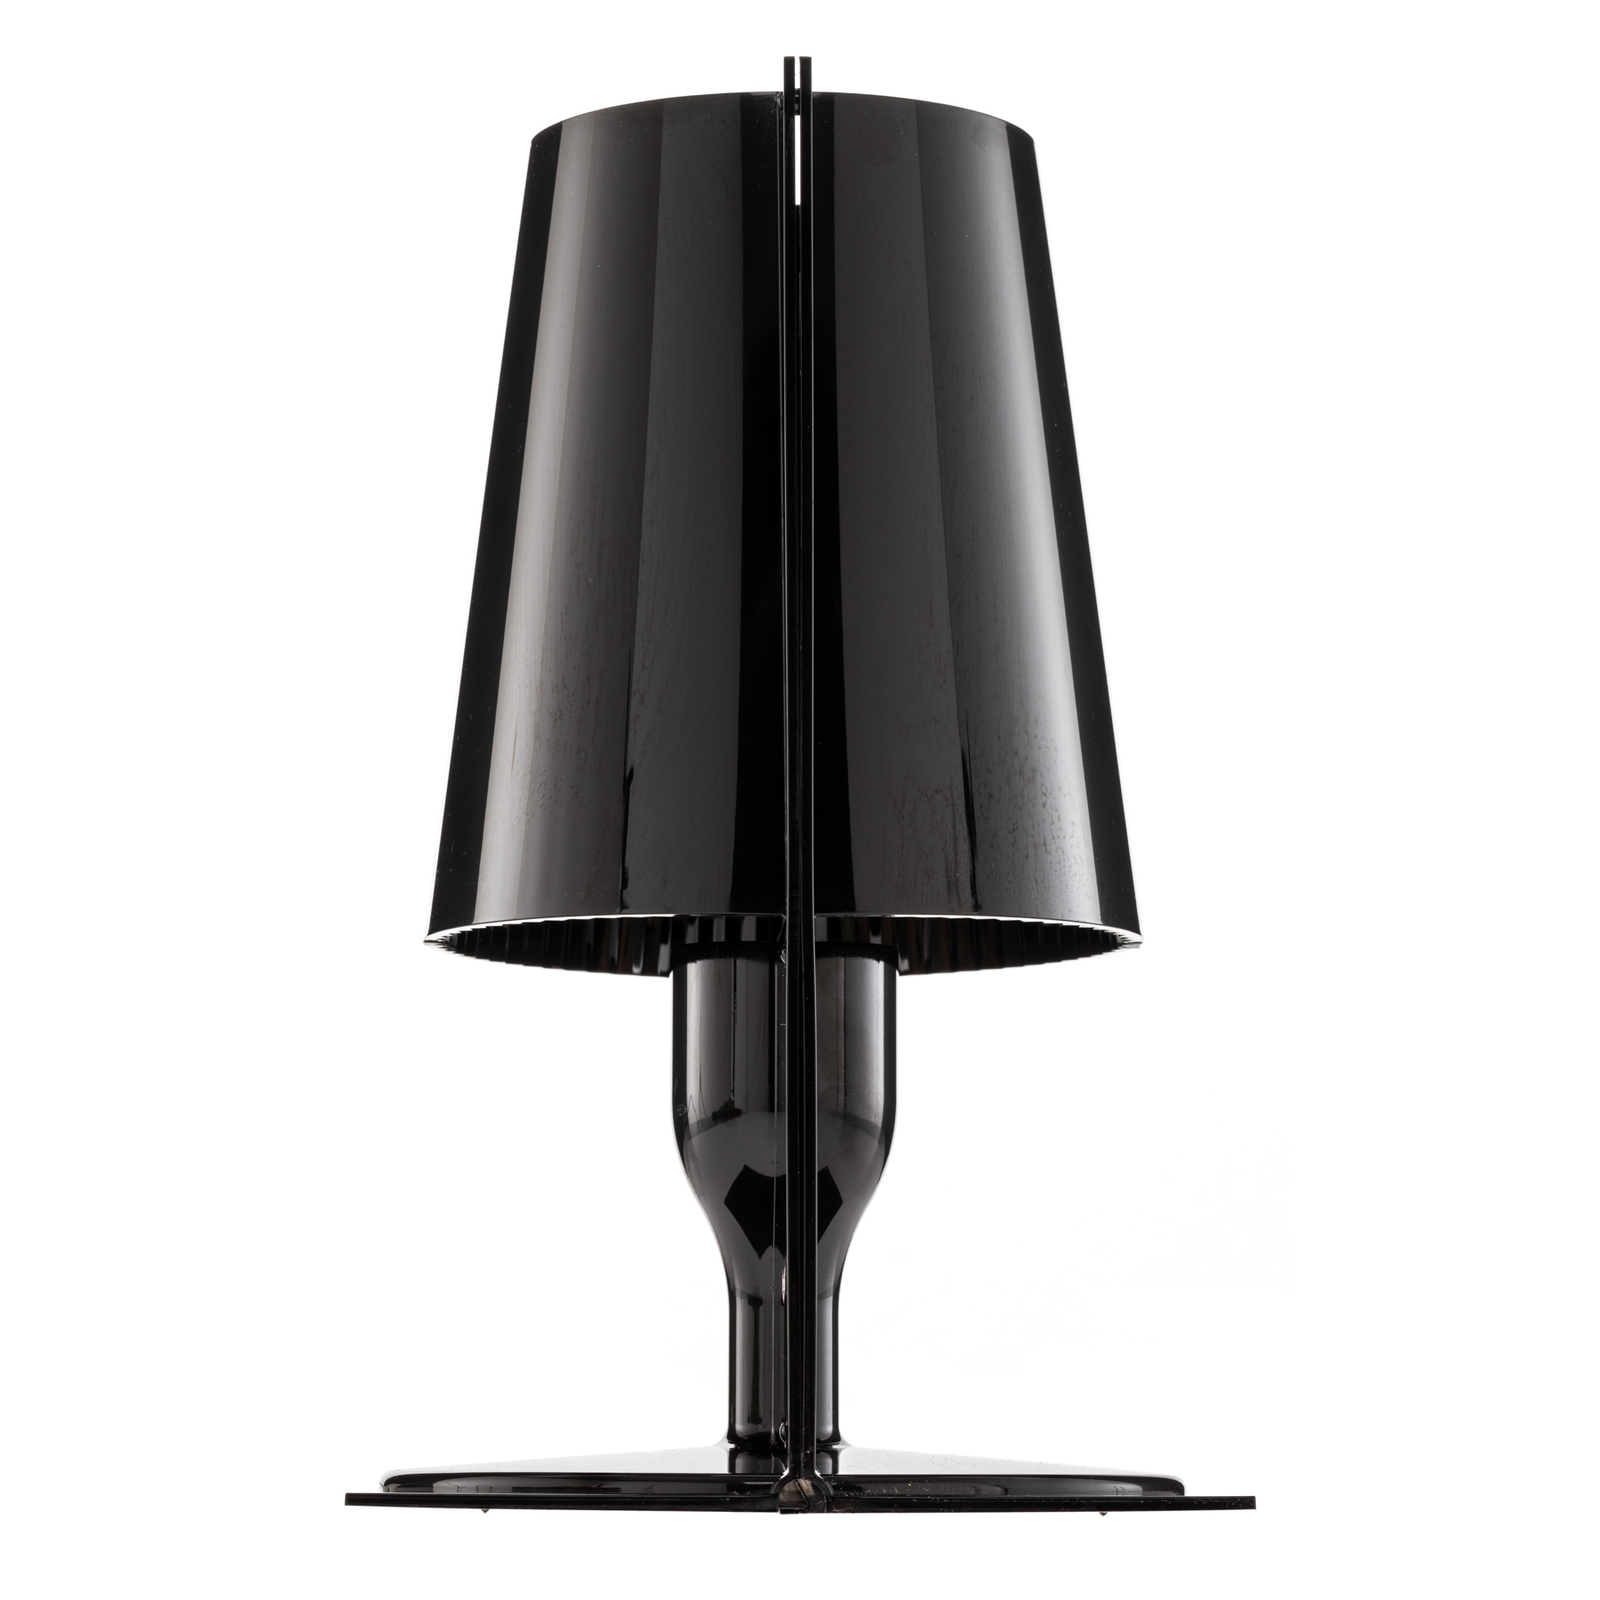 Kartell Take designer table lamp, black